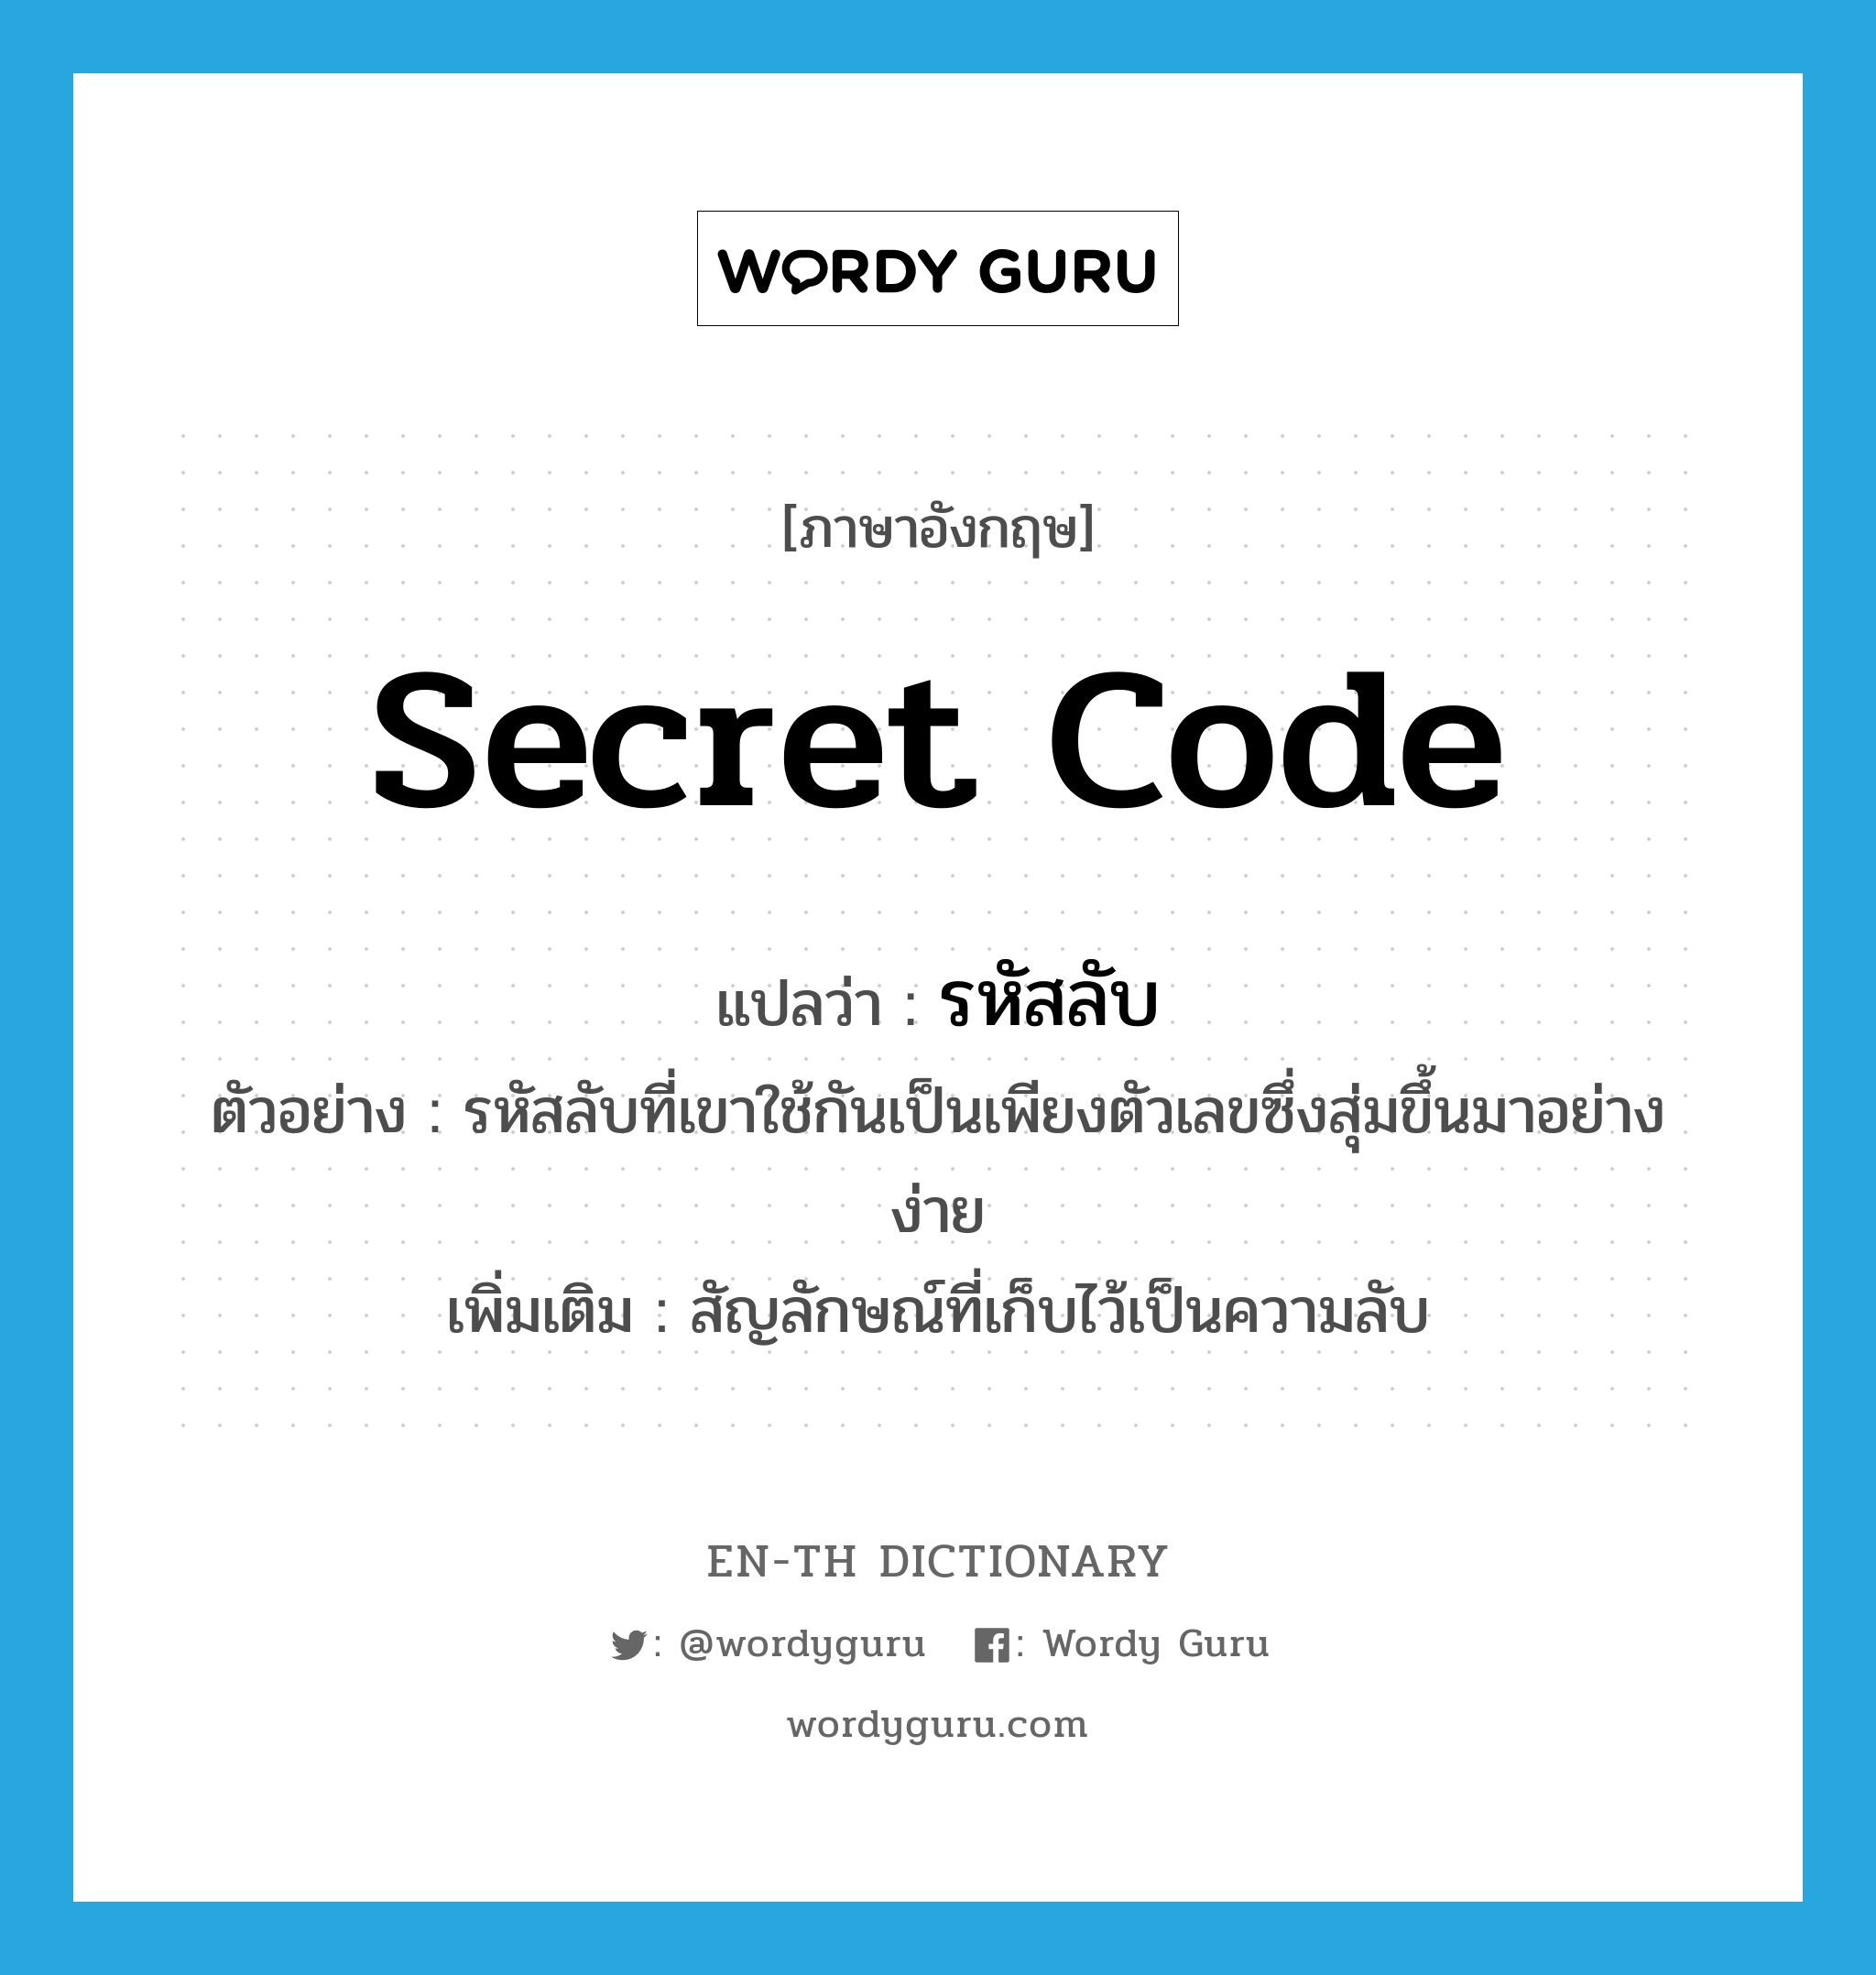 secret code แปลว่า?, คำศัพท์ภาษาอังกฤษ secret code แปลว่า รหัสลับ ประเภท N ตัวอย่าง รหัสลับที่เขาใช้กันเป็นเพียงตัวเลขซึ่งสุ่มขึ้นมาอย่างง่าย เพิ่มเติม สัญลักษณ์ที่เก็บไว้เป็นความลับ หมวด N